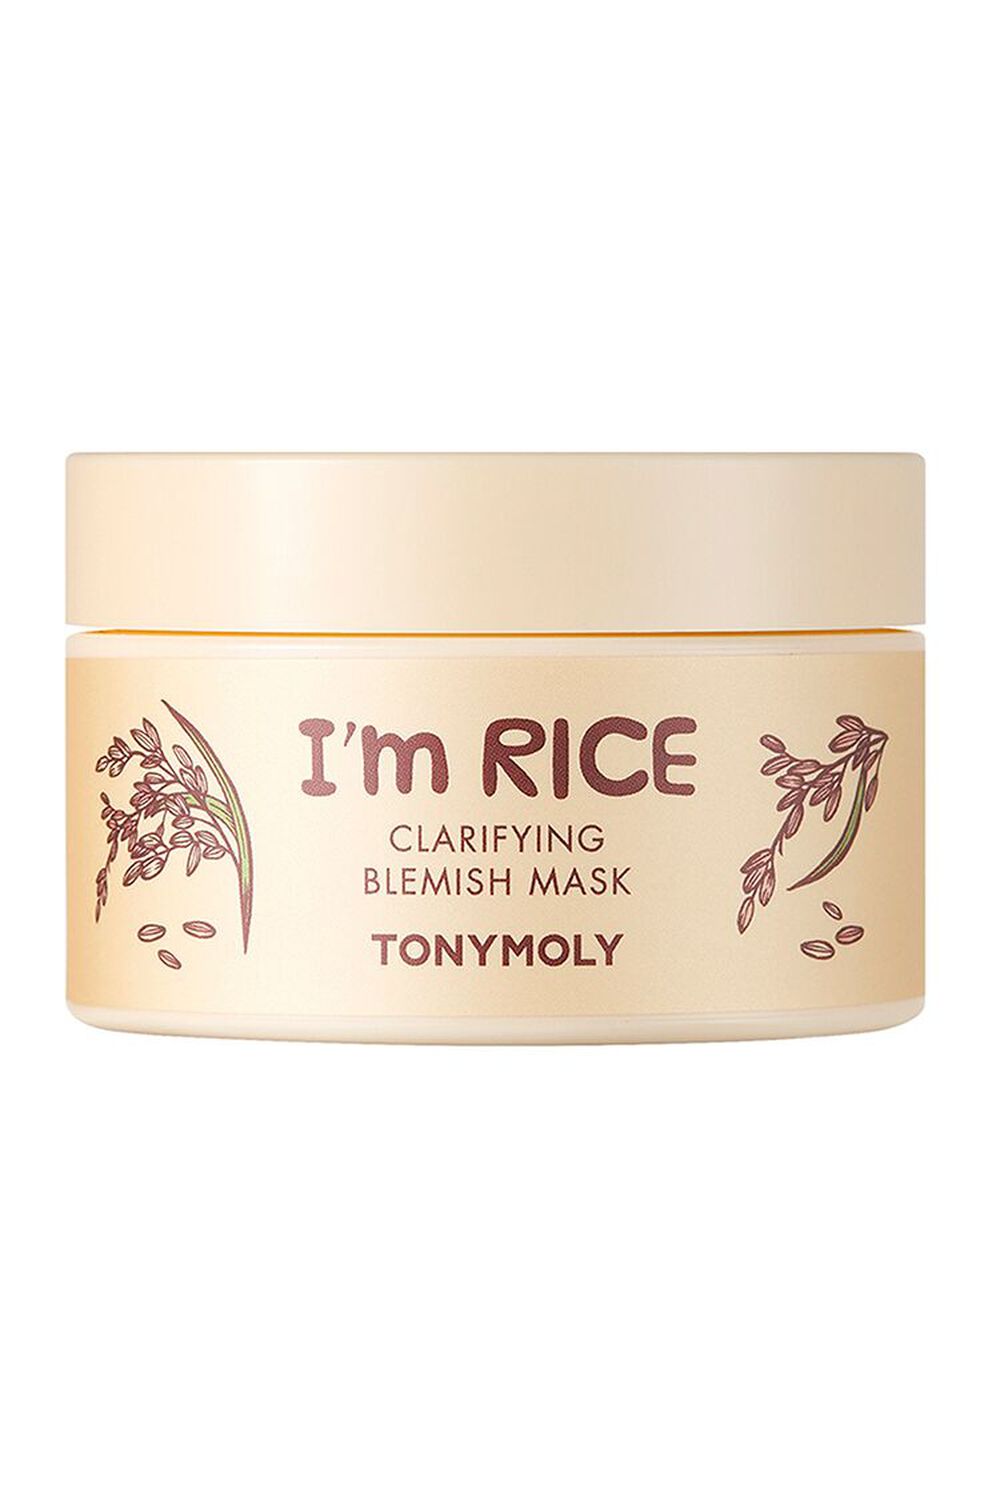 TONYMOLY Im Rice Clarifying Blemish Mask, image 1